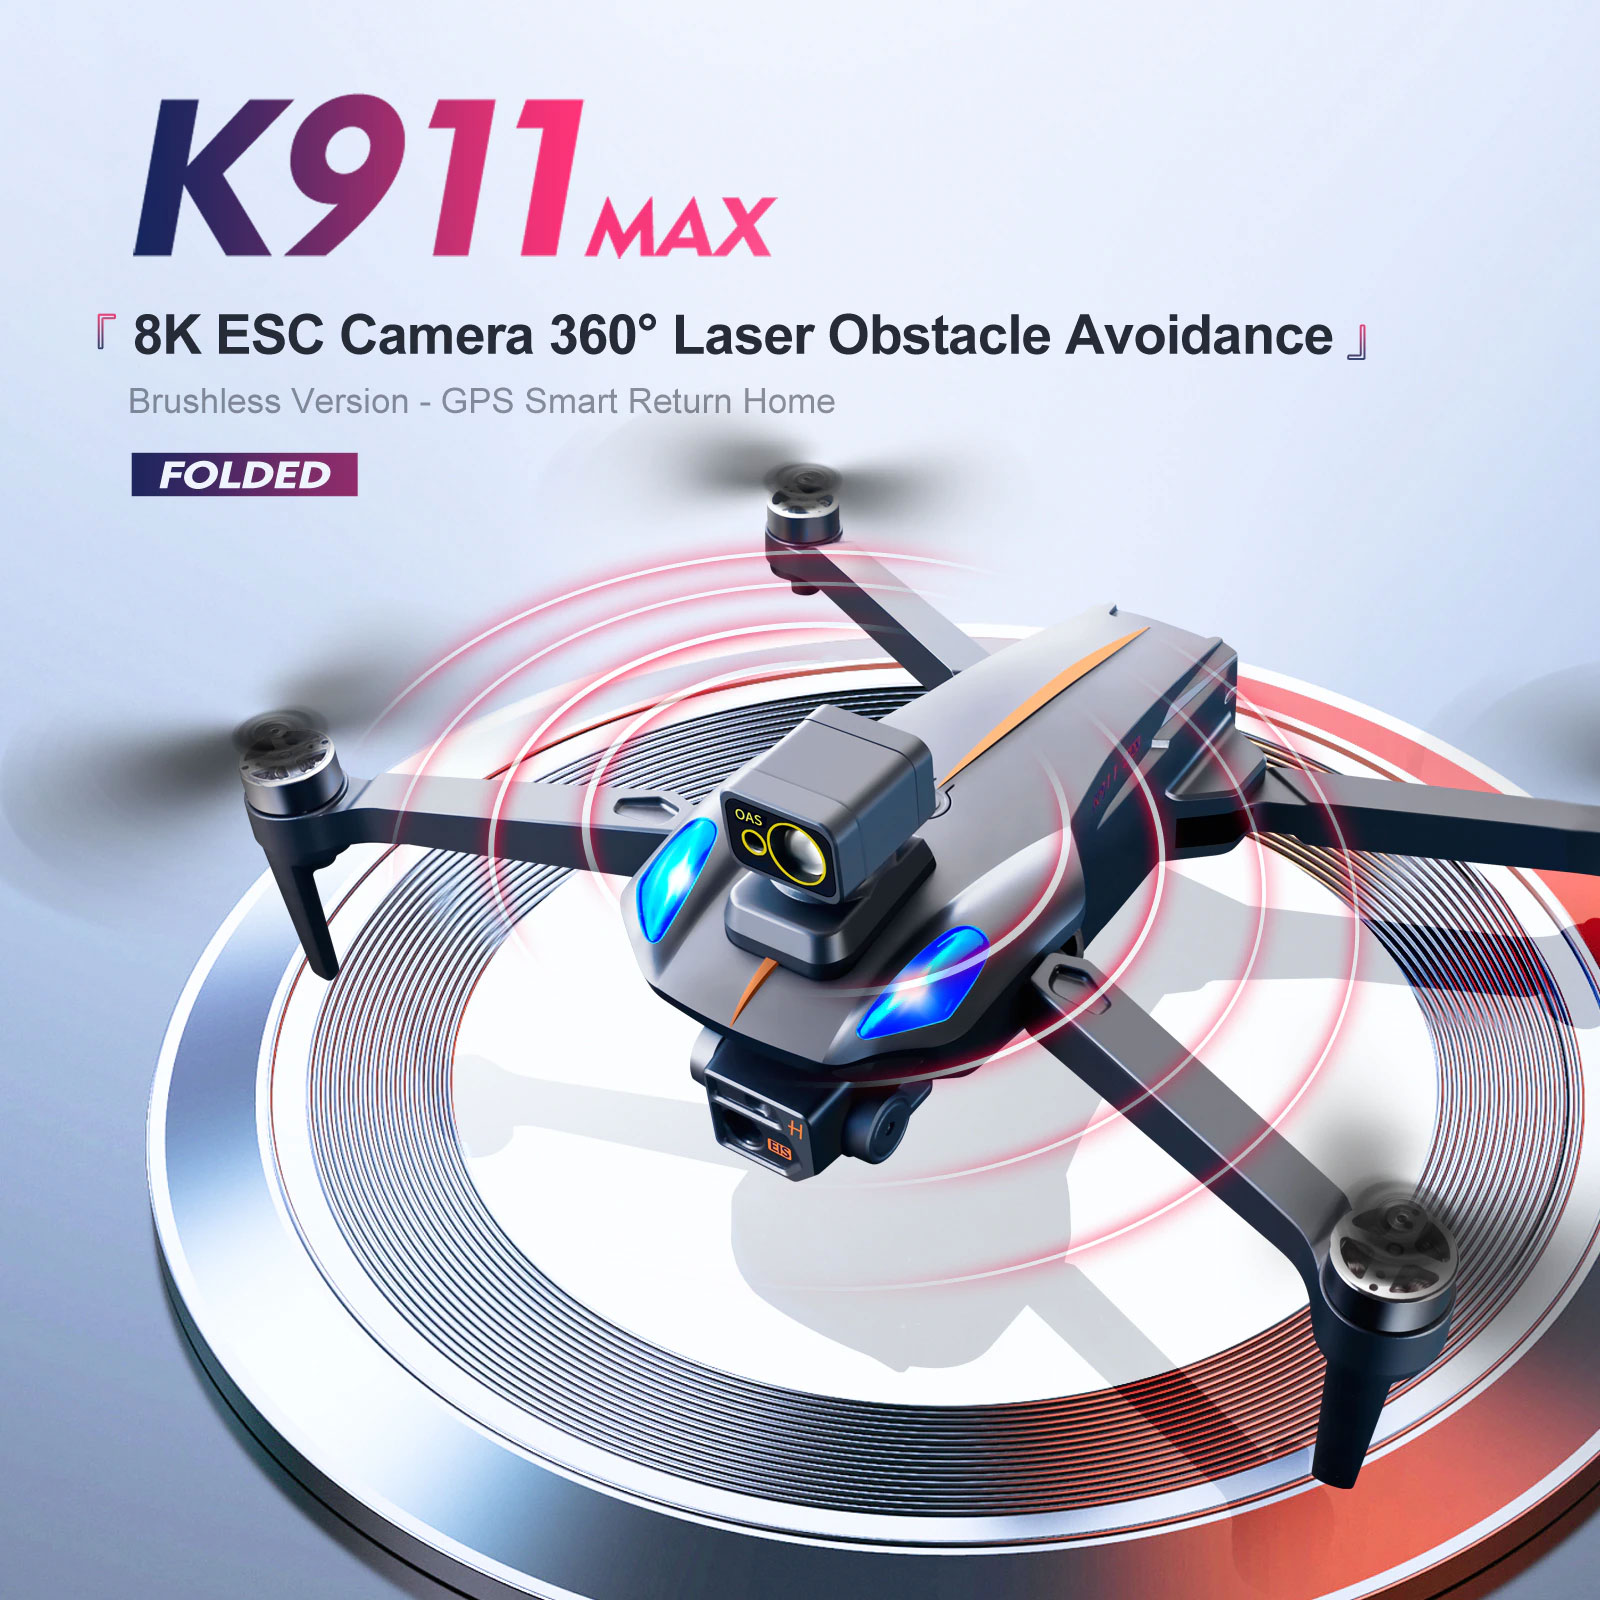 Máy Bay Không Người Lái Flycam K911 MAX G.P.S 4K Chuyên Nghiệp Chướng Ngại Vật Tránh Dual HD Camera Động...